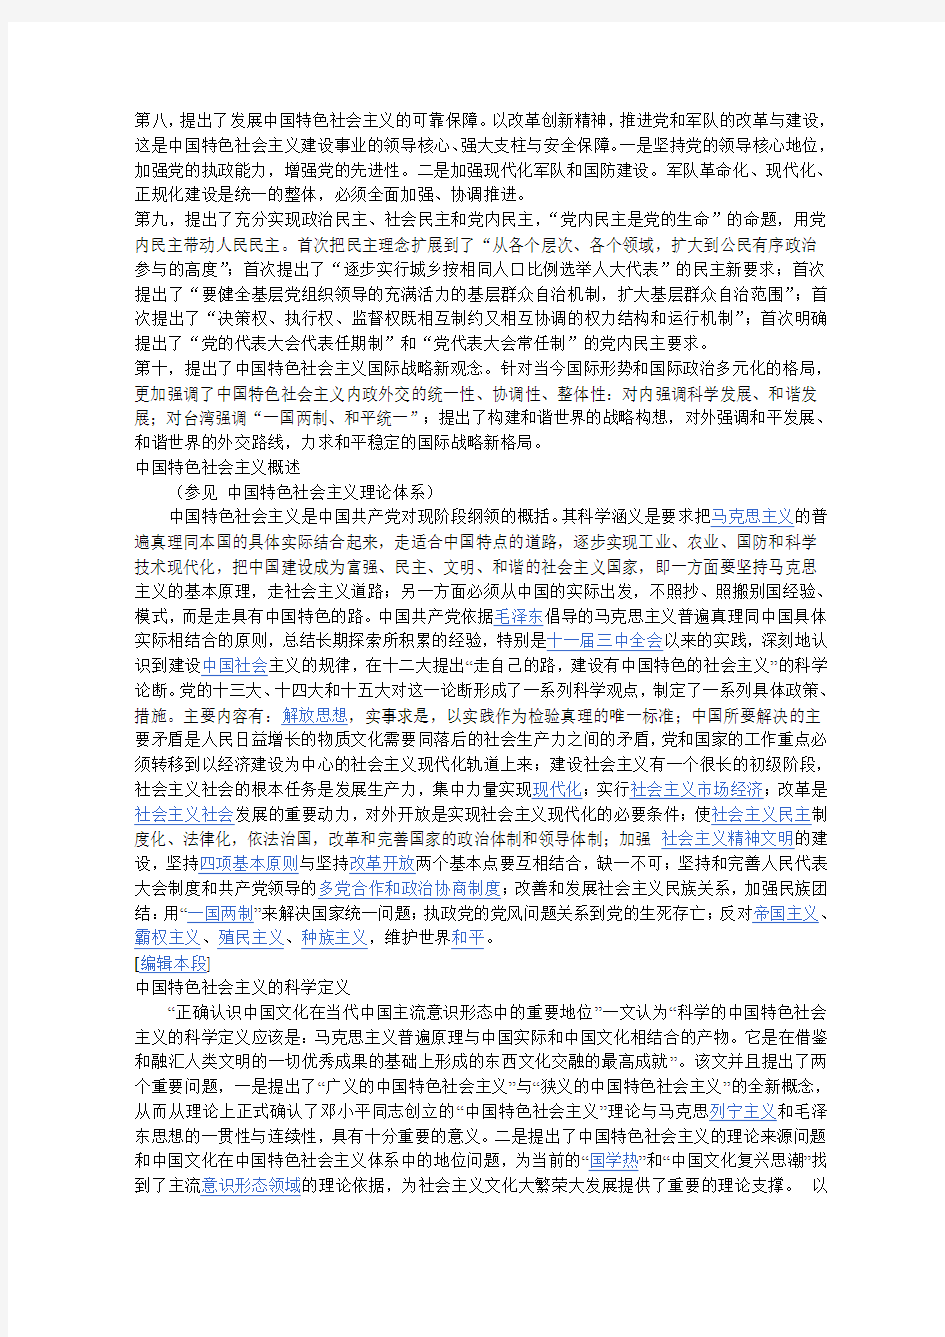 中国特色社会主义理论体系的主要内容[1]